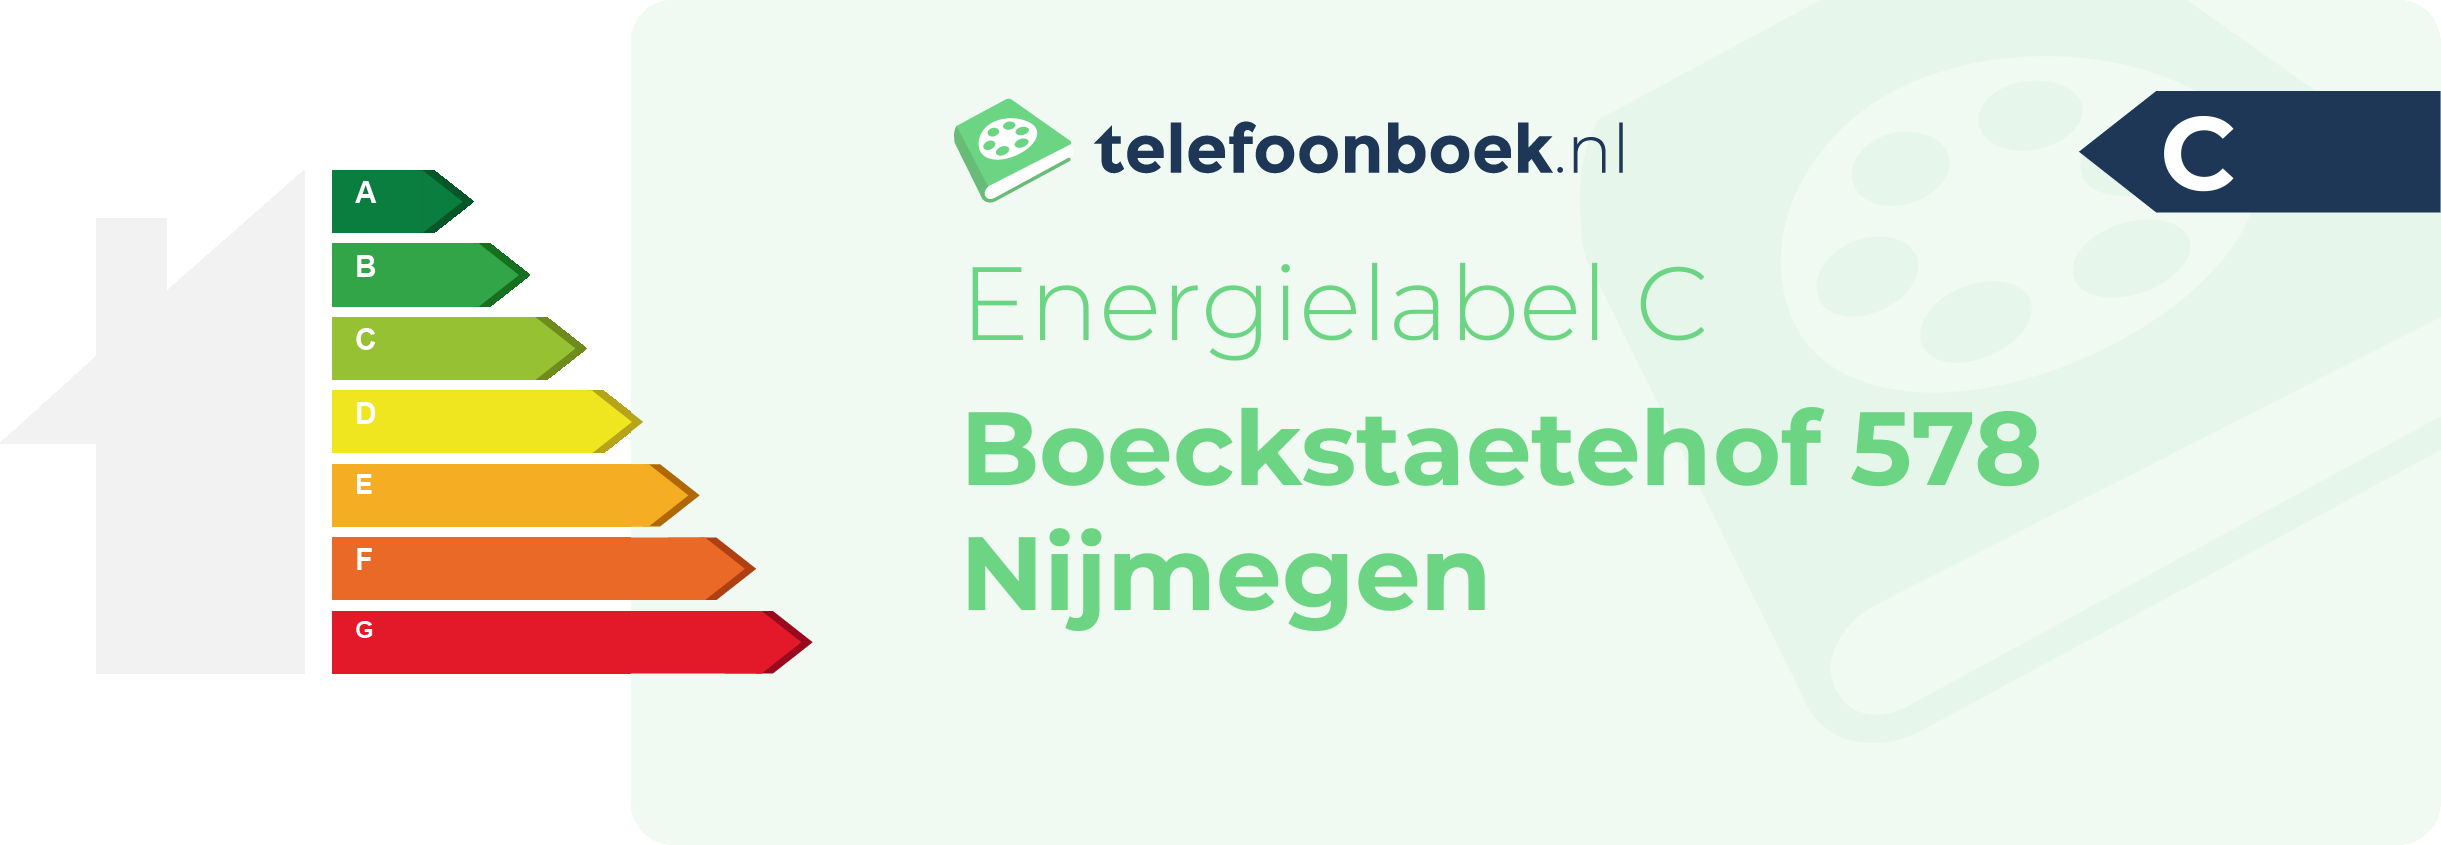 Energielabel Boeckstaetehof 578 Nijmegen